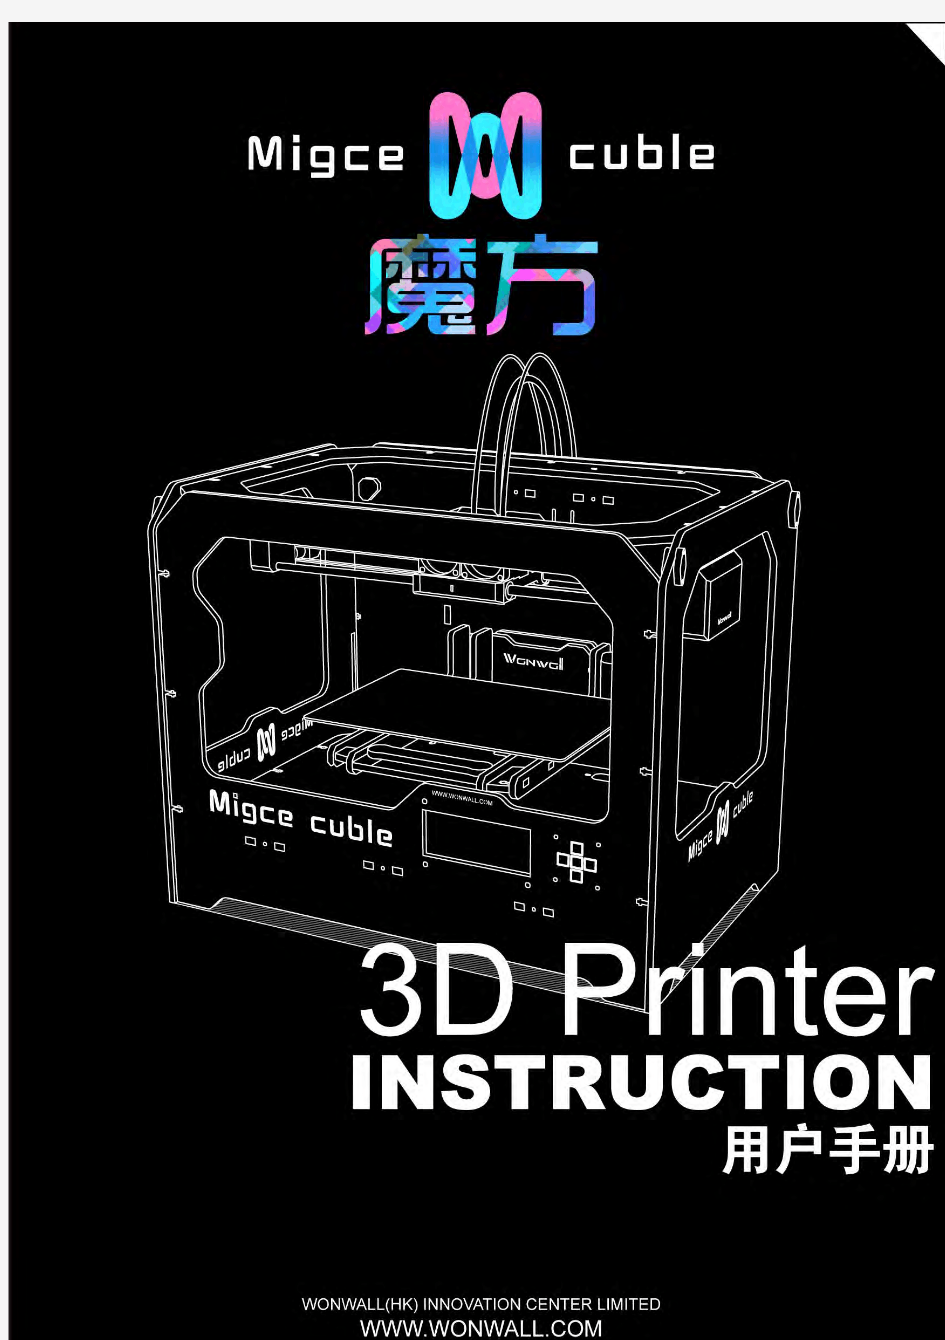 玩悟创新-魔方3D打印机Migce Cuble--用户手册-简体中文1